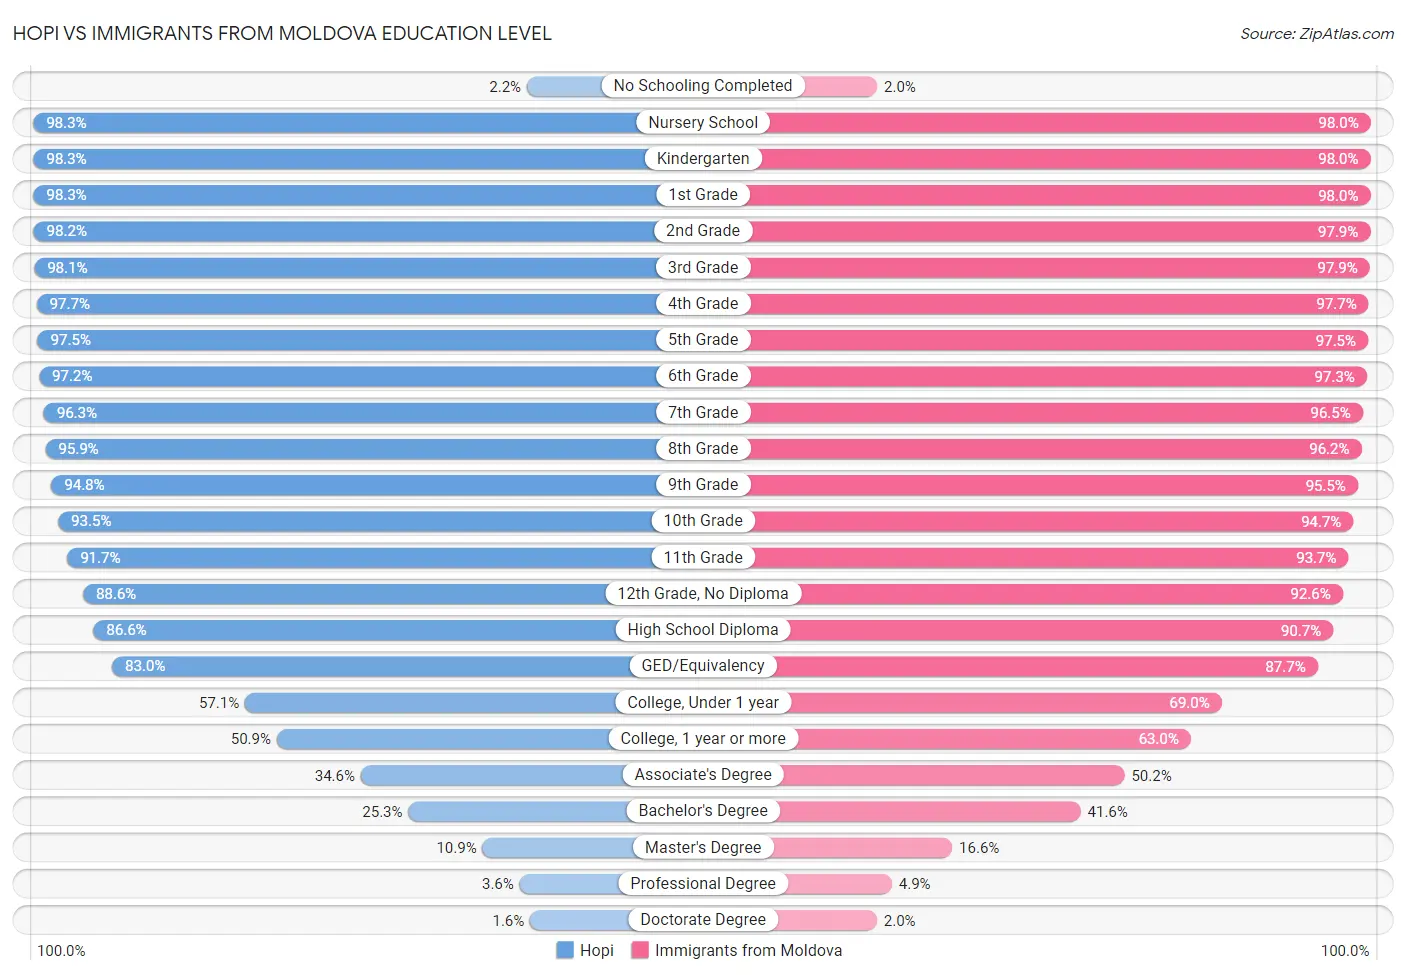 Hopi vs Immigrants from Moldova Education Level